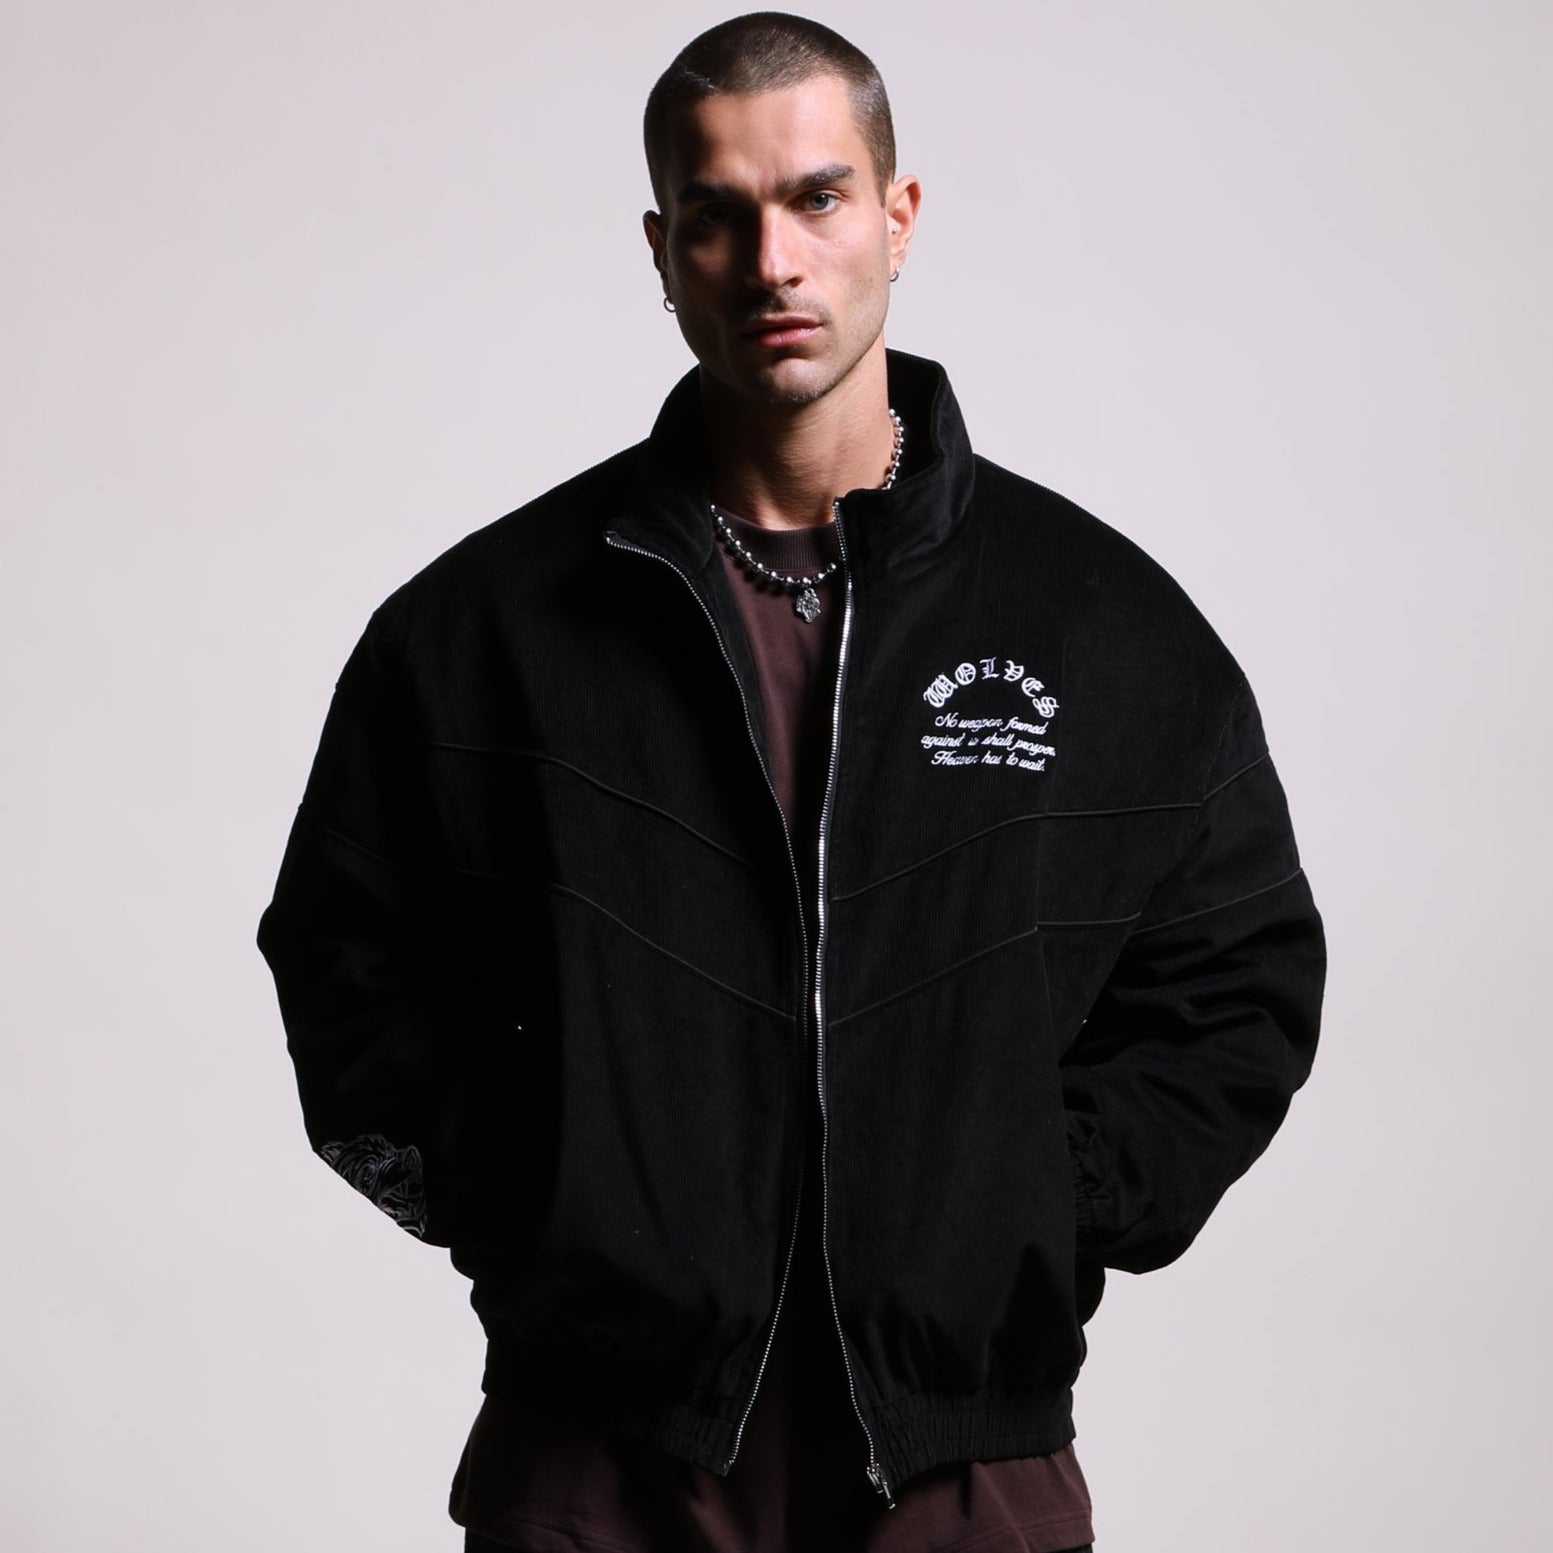 Jackets & Outerwear – DarcSport